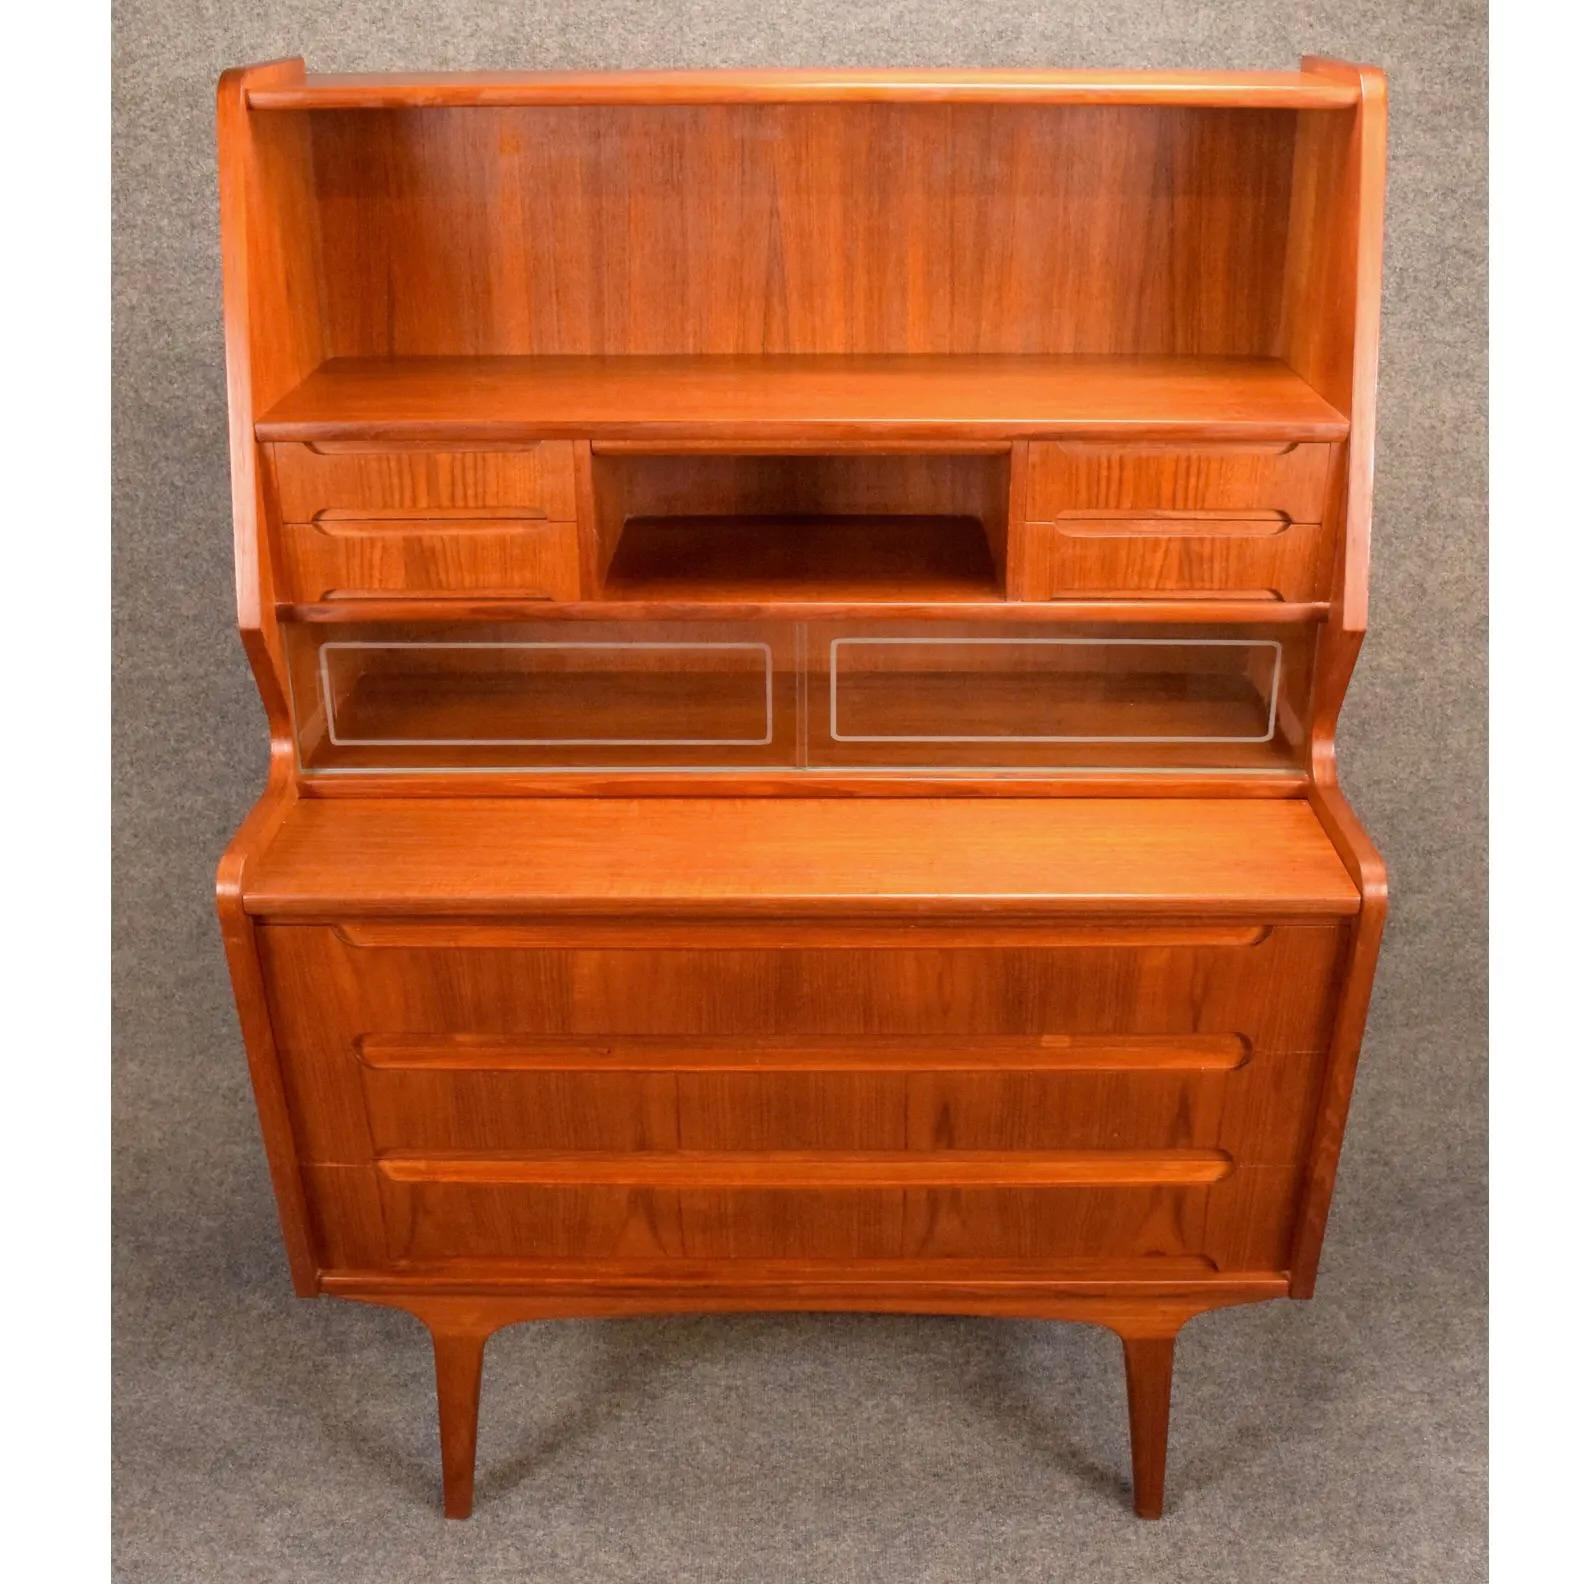 Mid-20th Century Vintage Danish Mid Century Modern Teak Secretary Desk For Sale